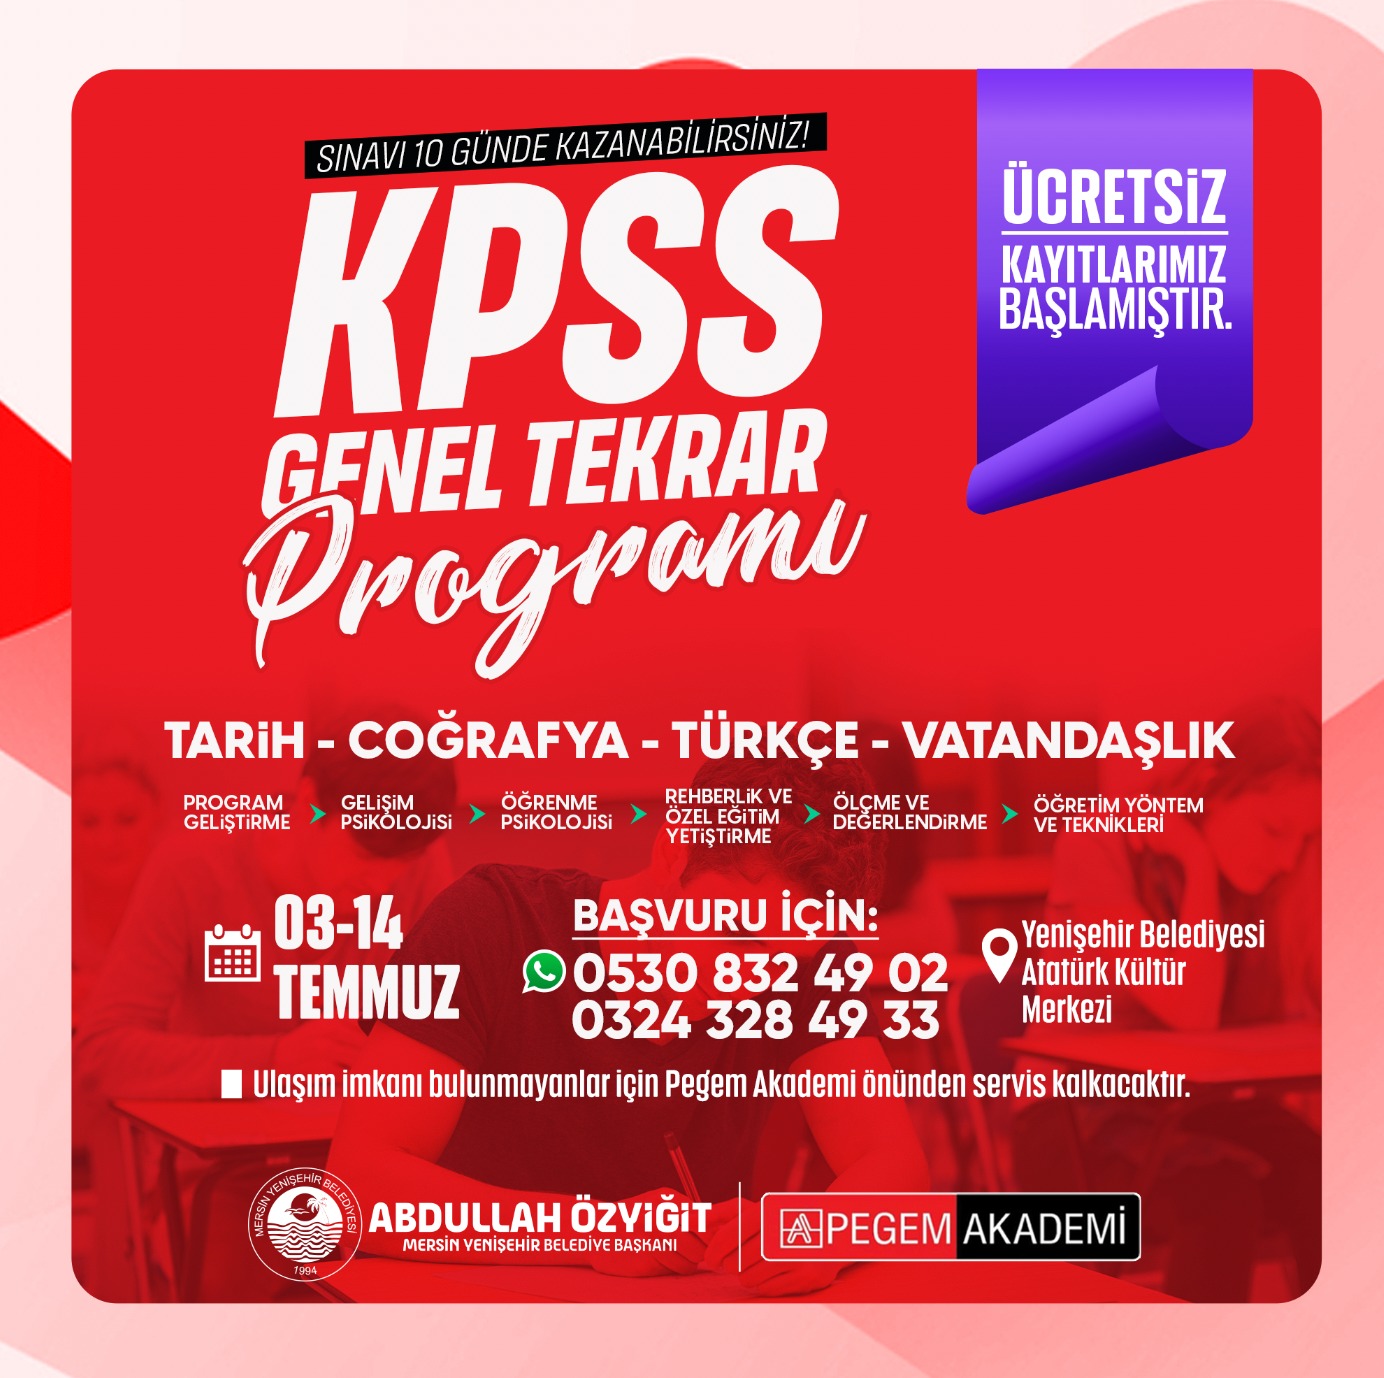 Yenişehir Belediyesinden ücretsiz KPSS genel tekrar programı (3)